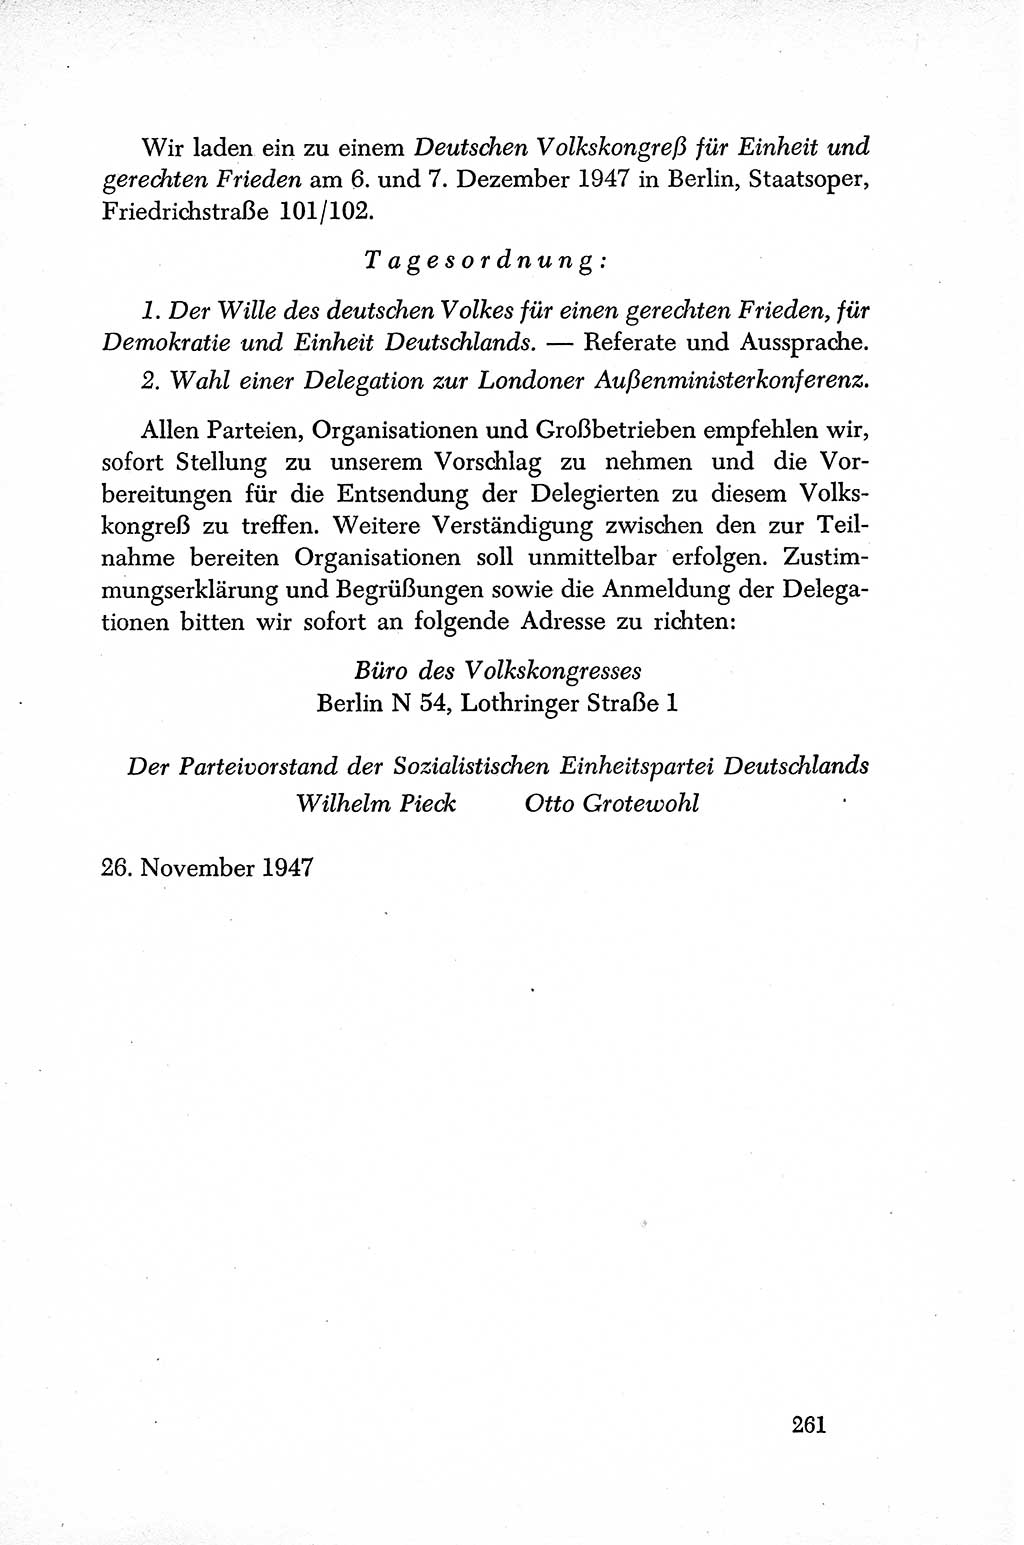 Dokumente der Sozialistischen Einheitspartei Deutschlands (SED) [Sowjetische Besatzungszone (SBZ) Deutschlands] 1946-1948, Seite 261 (Dok. SED SBZ Dtl. 1946-1948, S. 261)